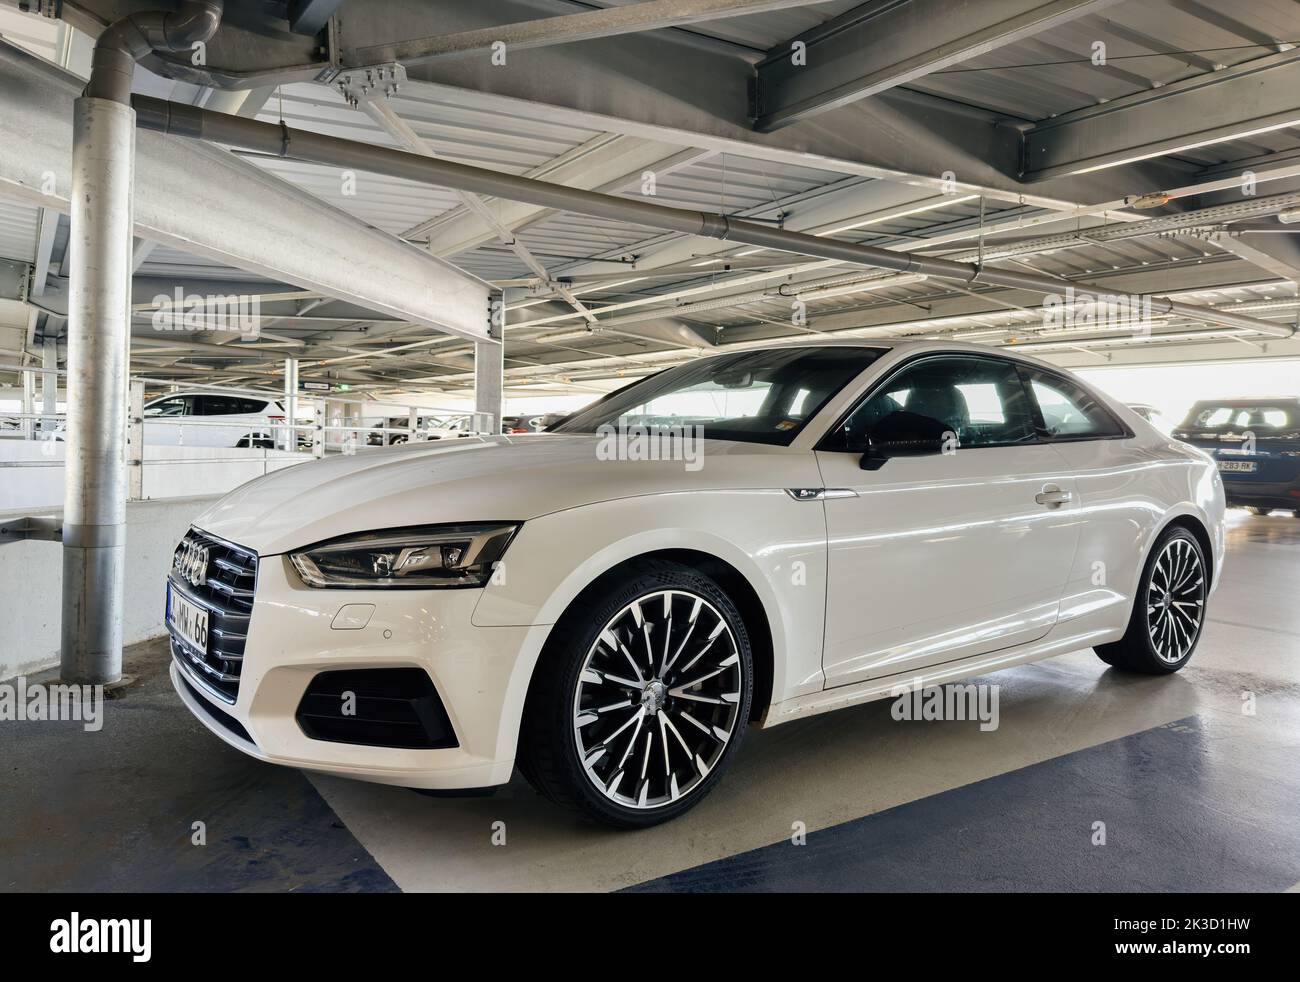 Genf 2018: Live-Fotos zeigen neuen Audi A6 C8 mit S line